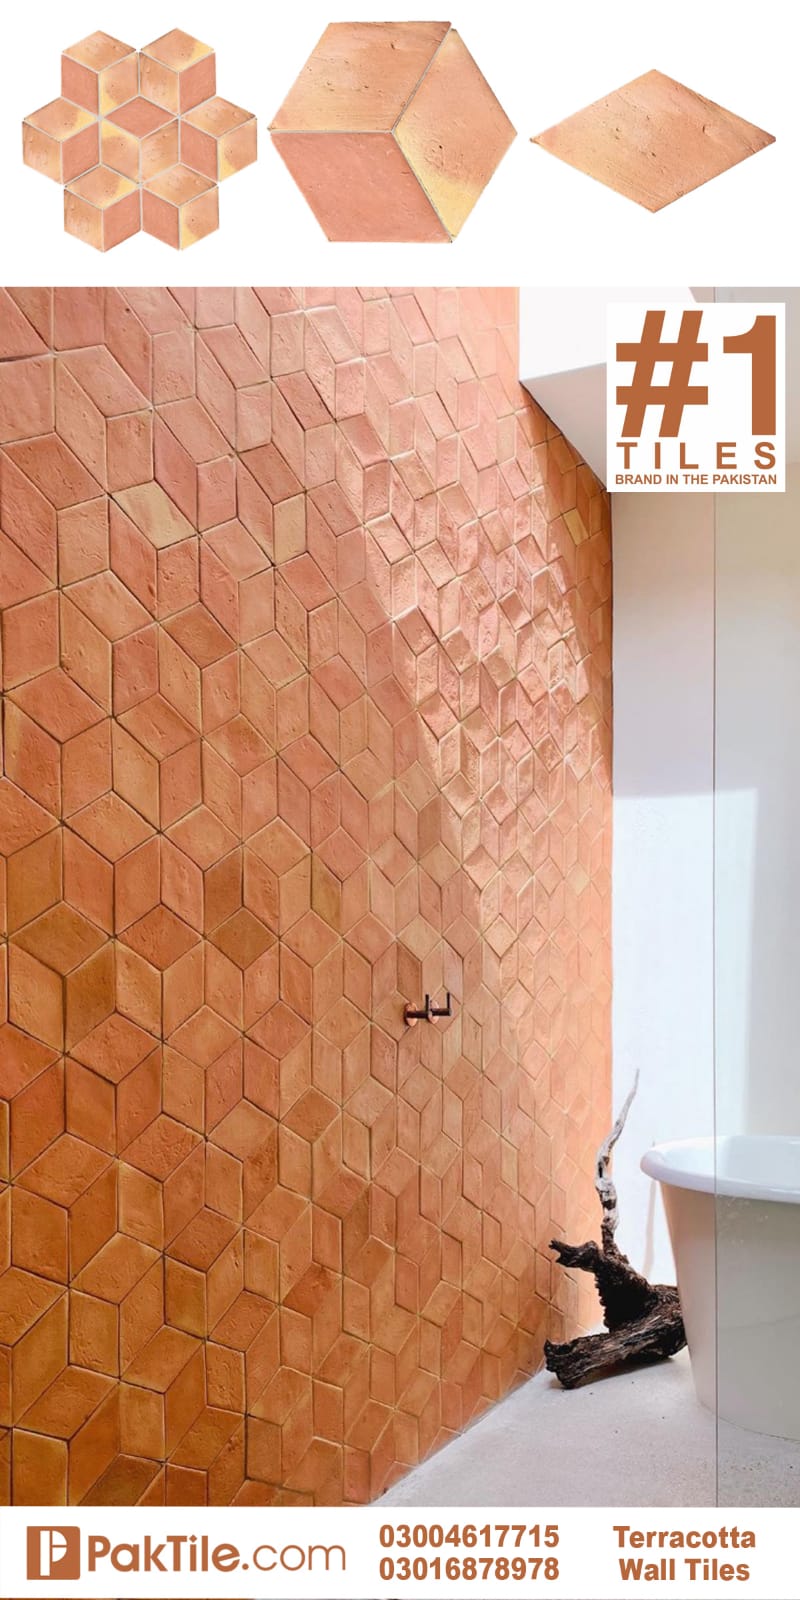 Terracotta Wall Tiles Price in Rawalpindi